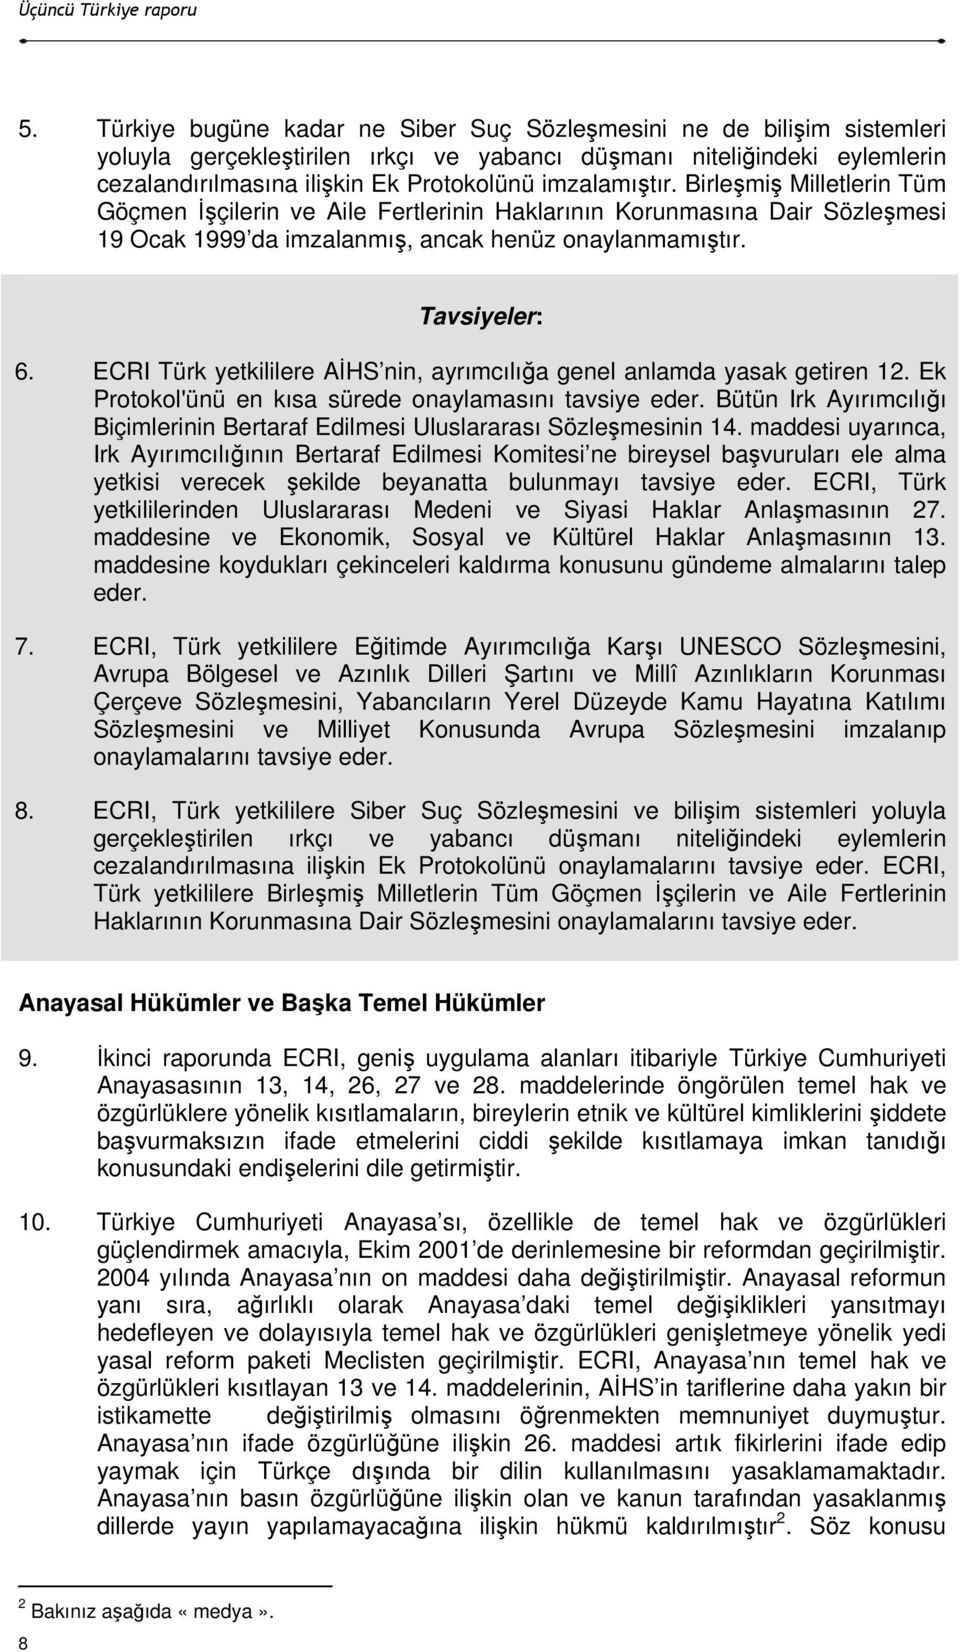 ECRI Türk yetkililere AĐHS nin, ayrımcılığa genel anlamda yasak getiren 12. Ek Protokol'ünü en kısa sürede onaylamasını tavsiye eder.